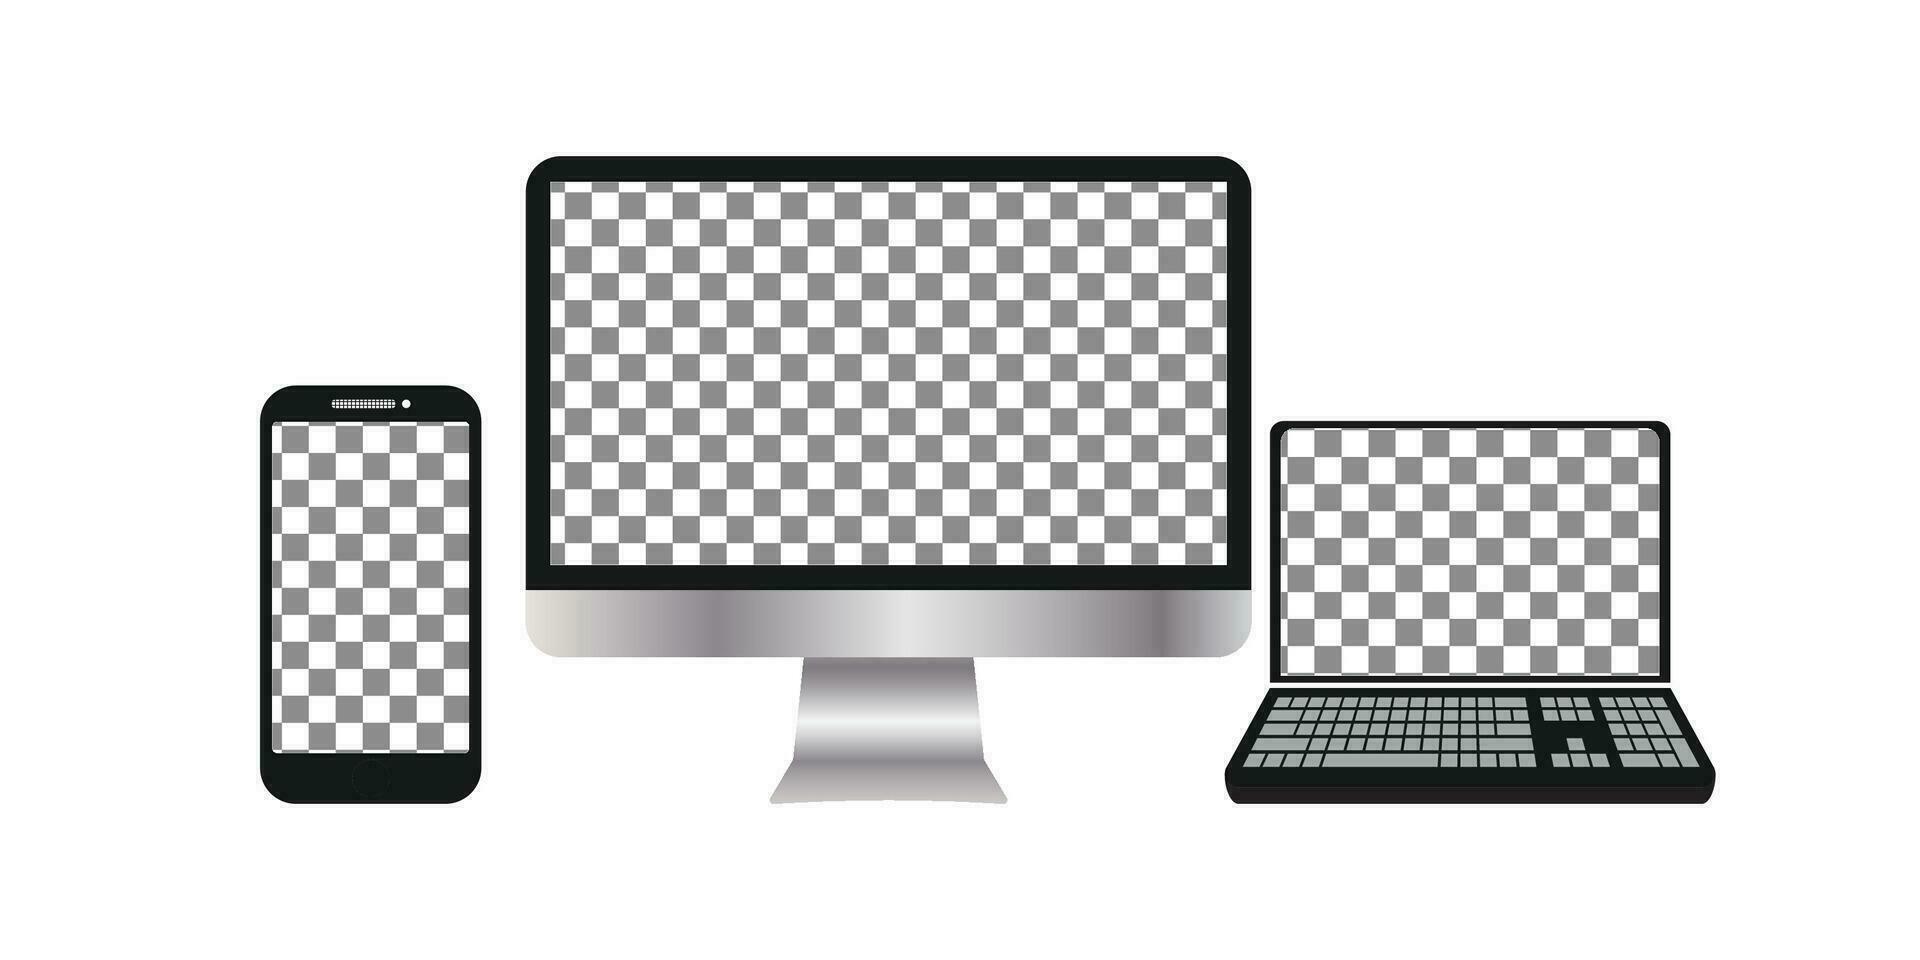 een verzameling van elektronisch apparaten, computers, laptops, smartphones met blanco schermen. modellen. vector illustratie elementen